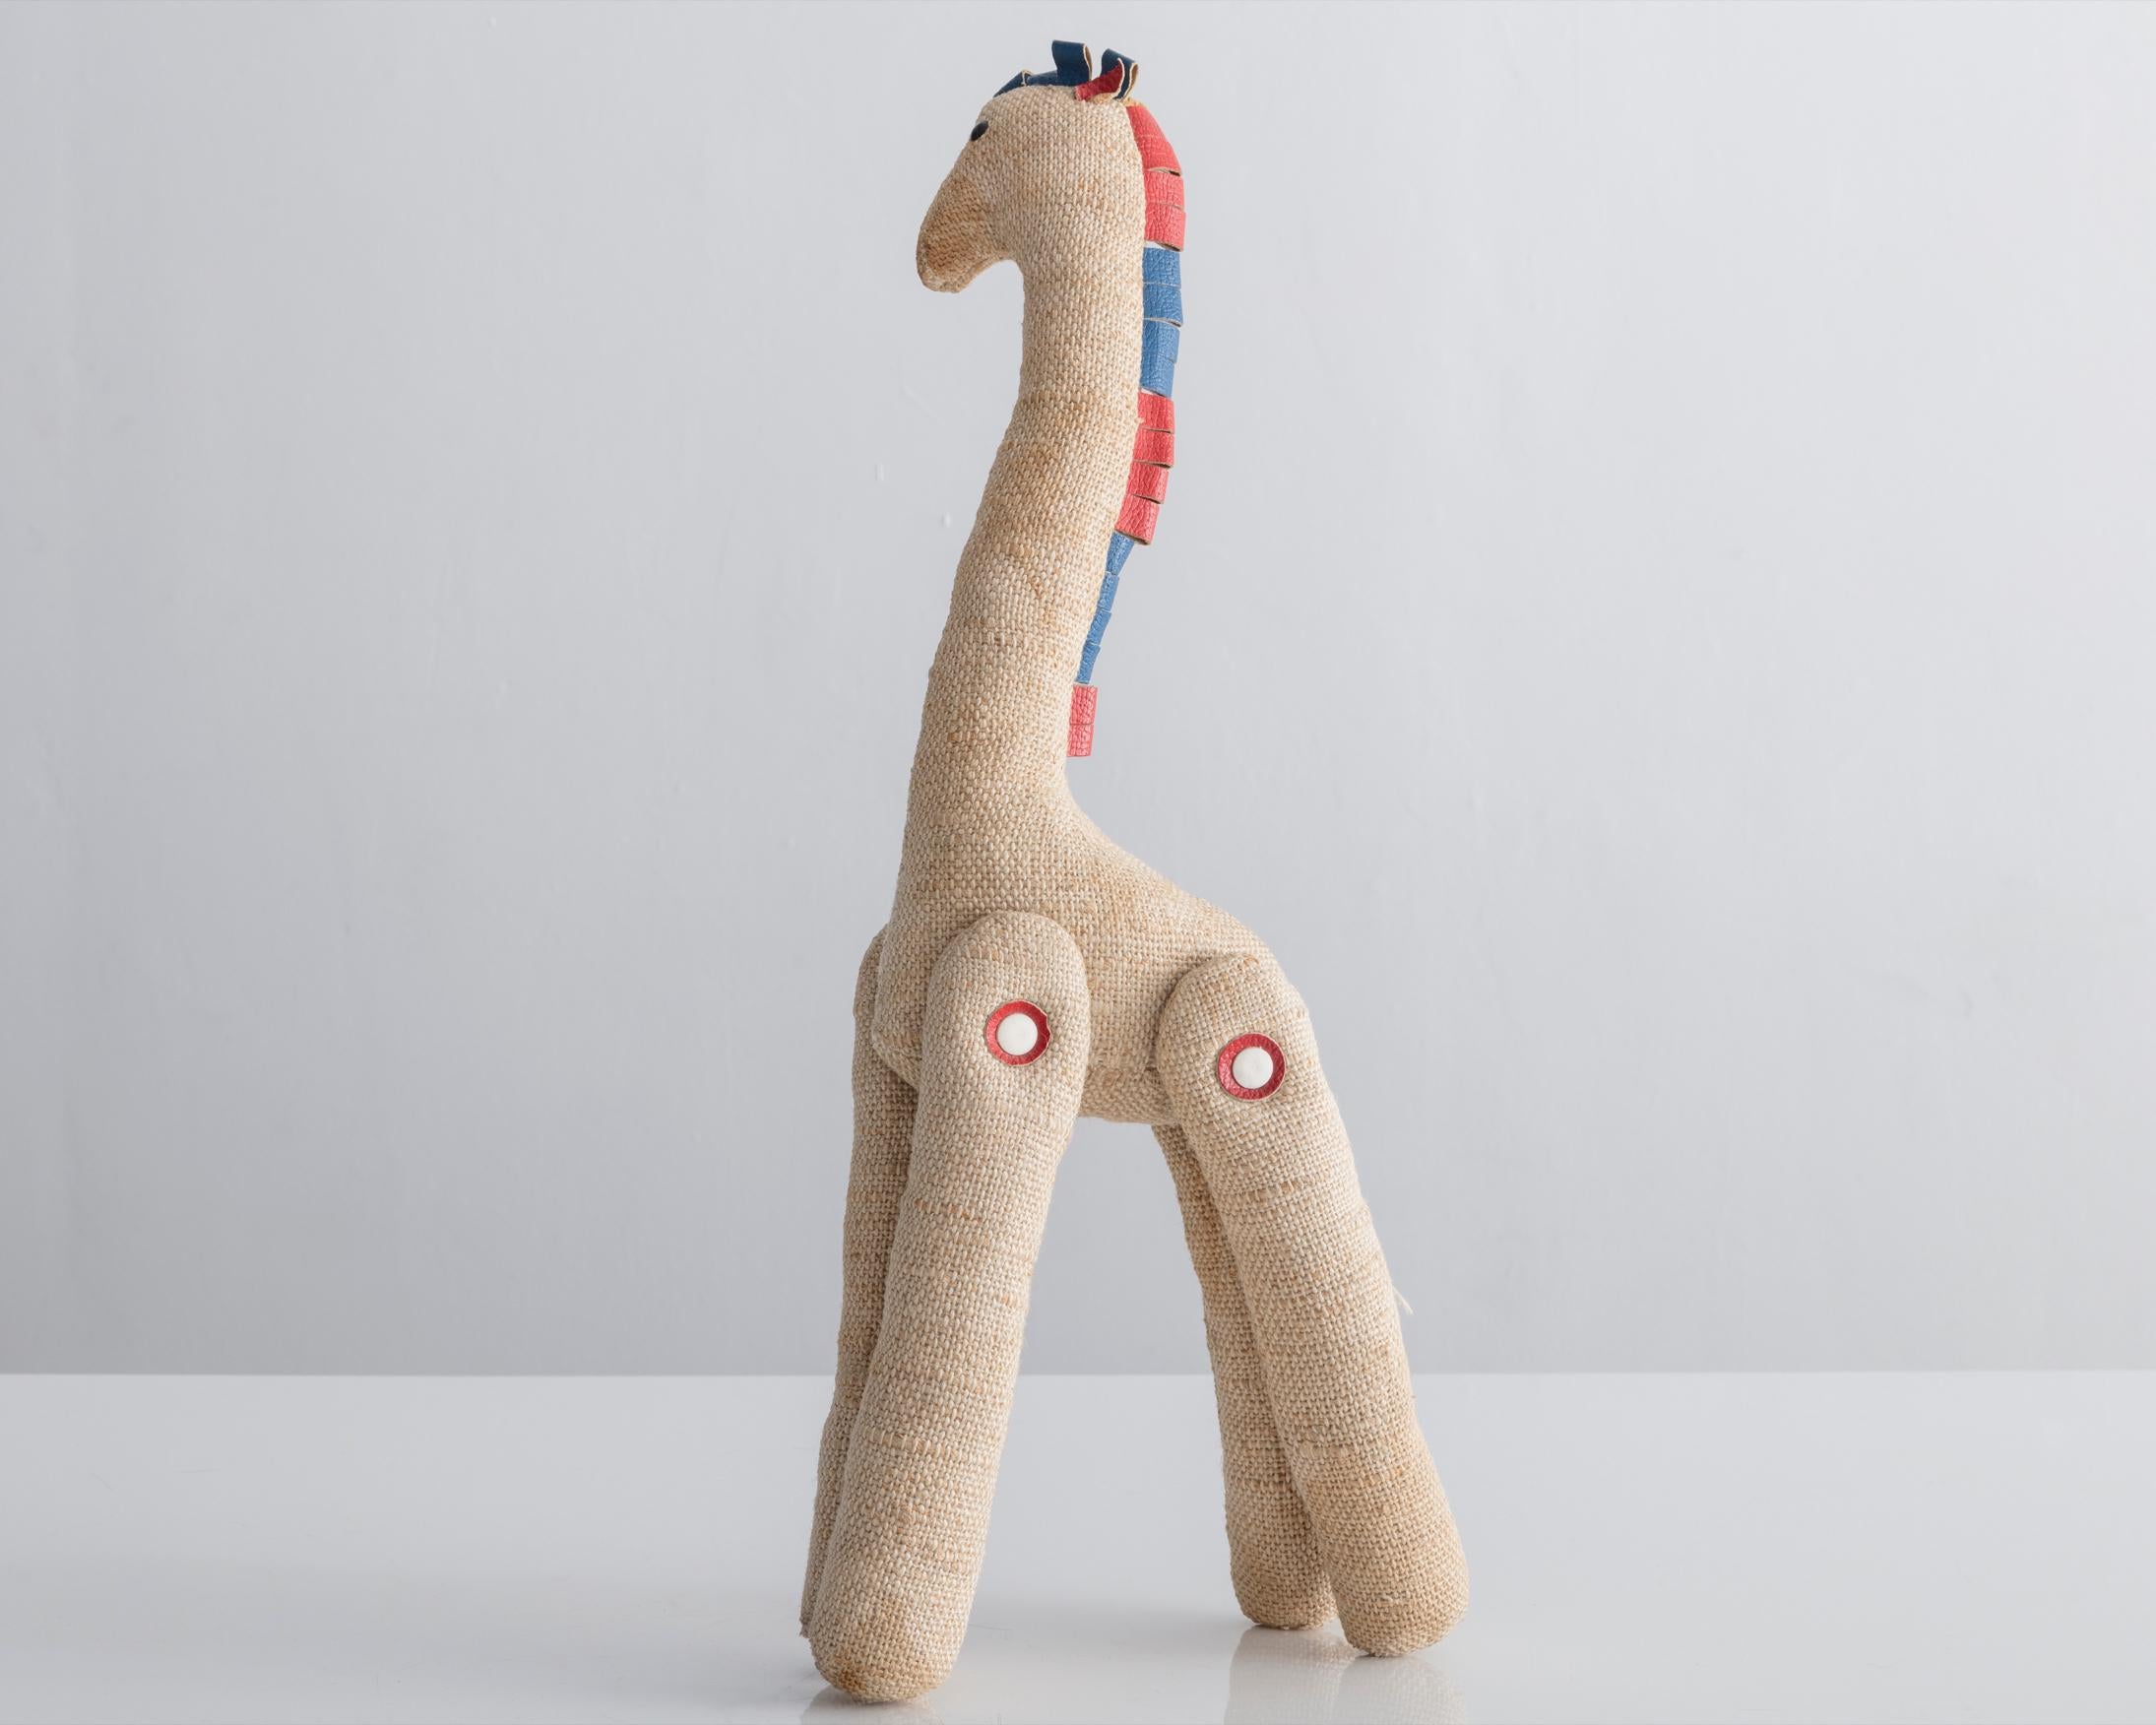 Therapeutisches Spielzeug Giraffe aus natürlicher Jute mit roten und blauen Lederdetails. Entworfen von Renate Müller für H. Josef Leven KG, Sonneberg, Deutschland, um 1968.
   